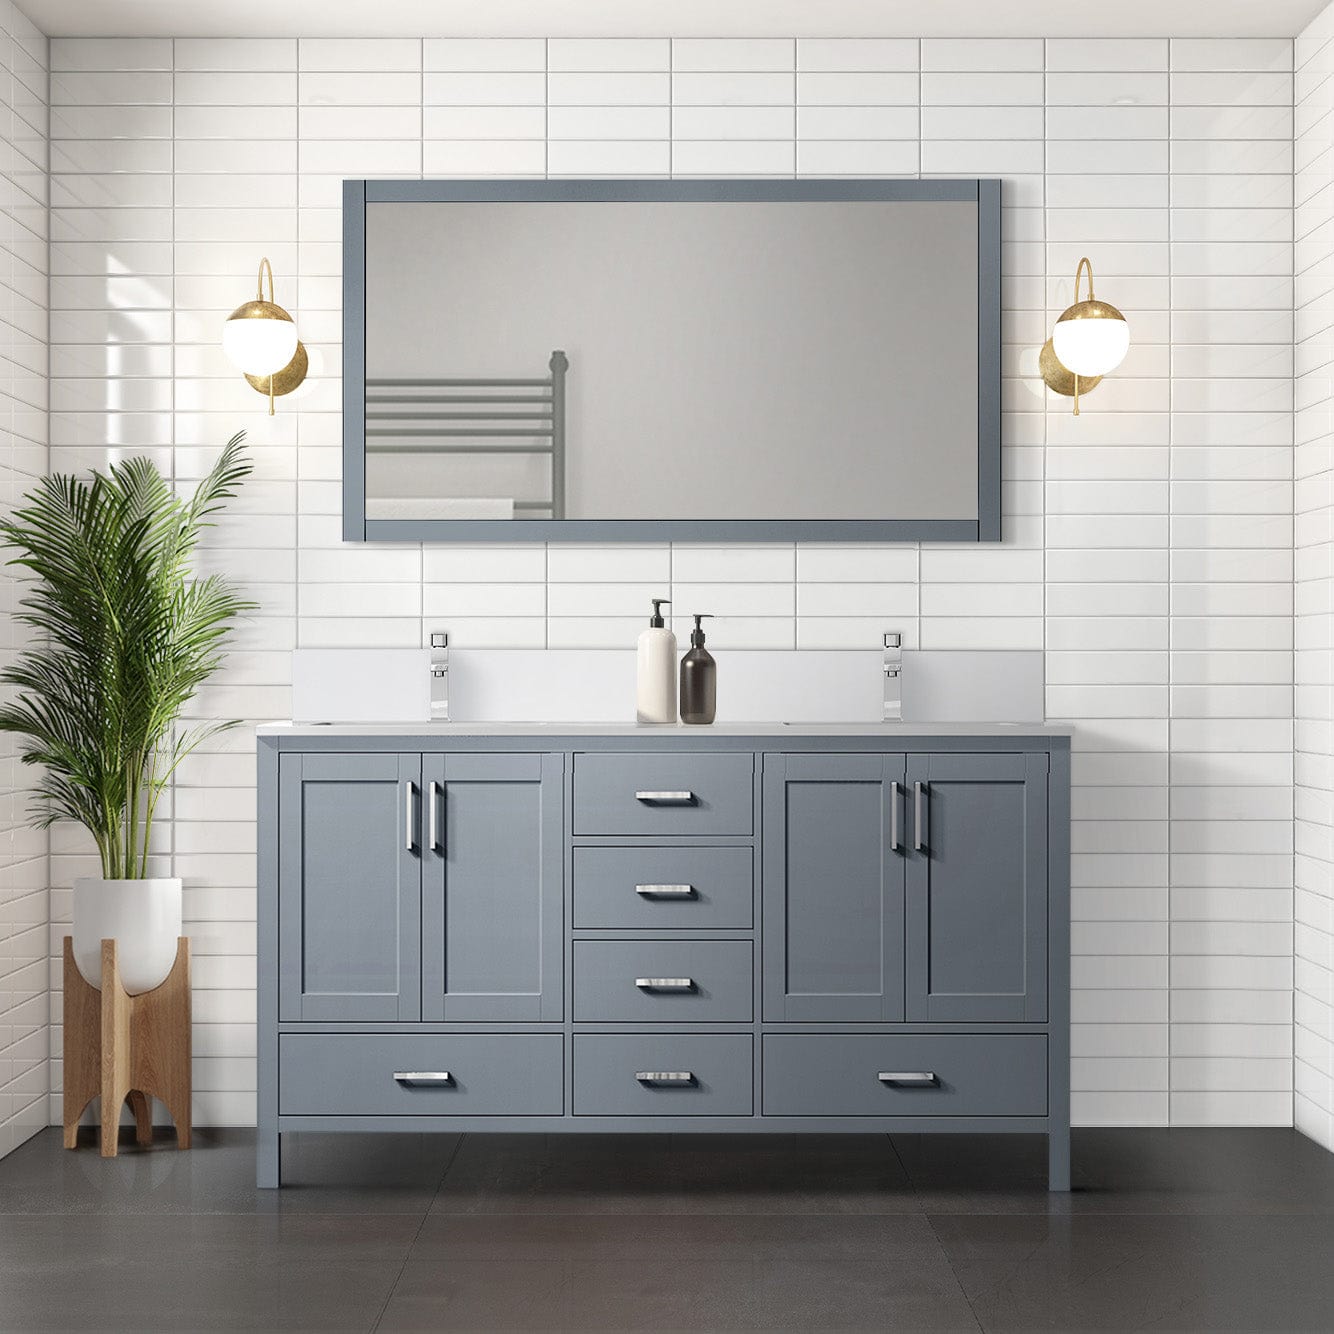 Lexora Bathroom Vanity Dark Grey / Cultured Marble / No Mirror Big Sur 60" x 22" Double Bath Vanity